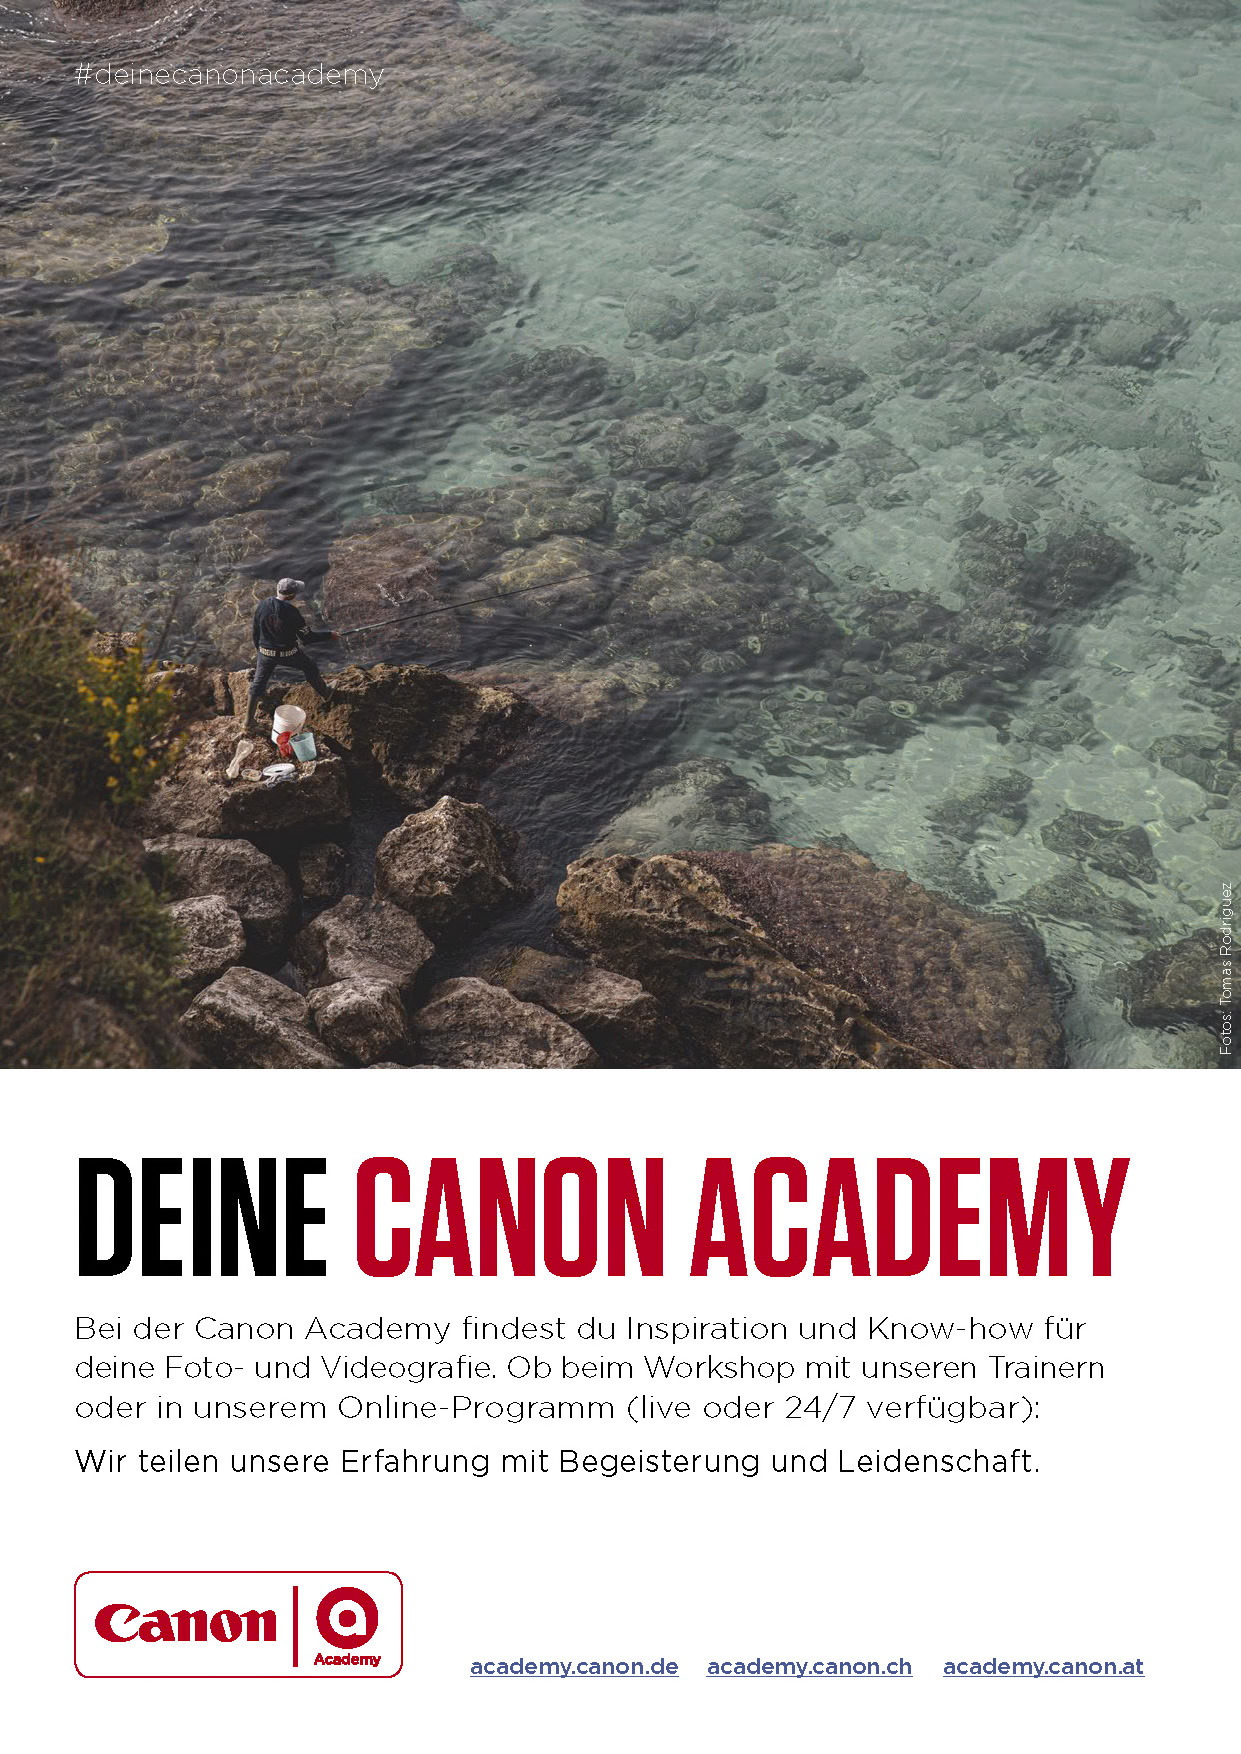 Luftaufnahme einer Person, die allein in einer felsigen Landschaft steht, umgeben von einem strukturierten Meer. Ein Werbeplakat für die Canon Academy mit deutschem Text. © Fotografie Tomas Rodriguez